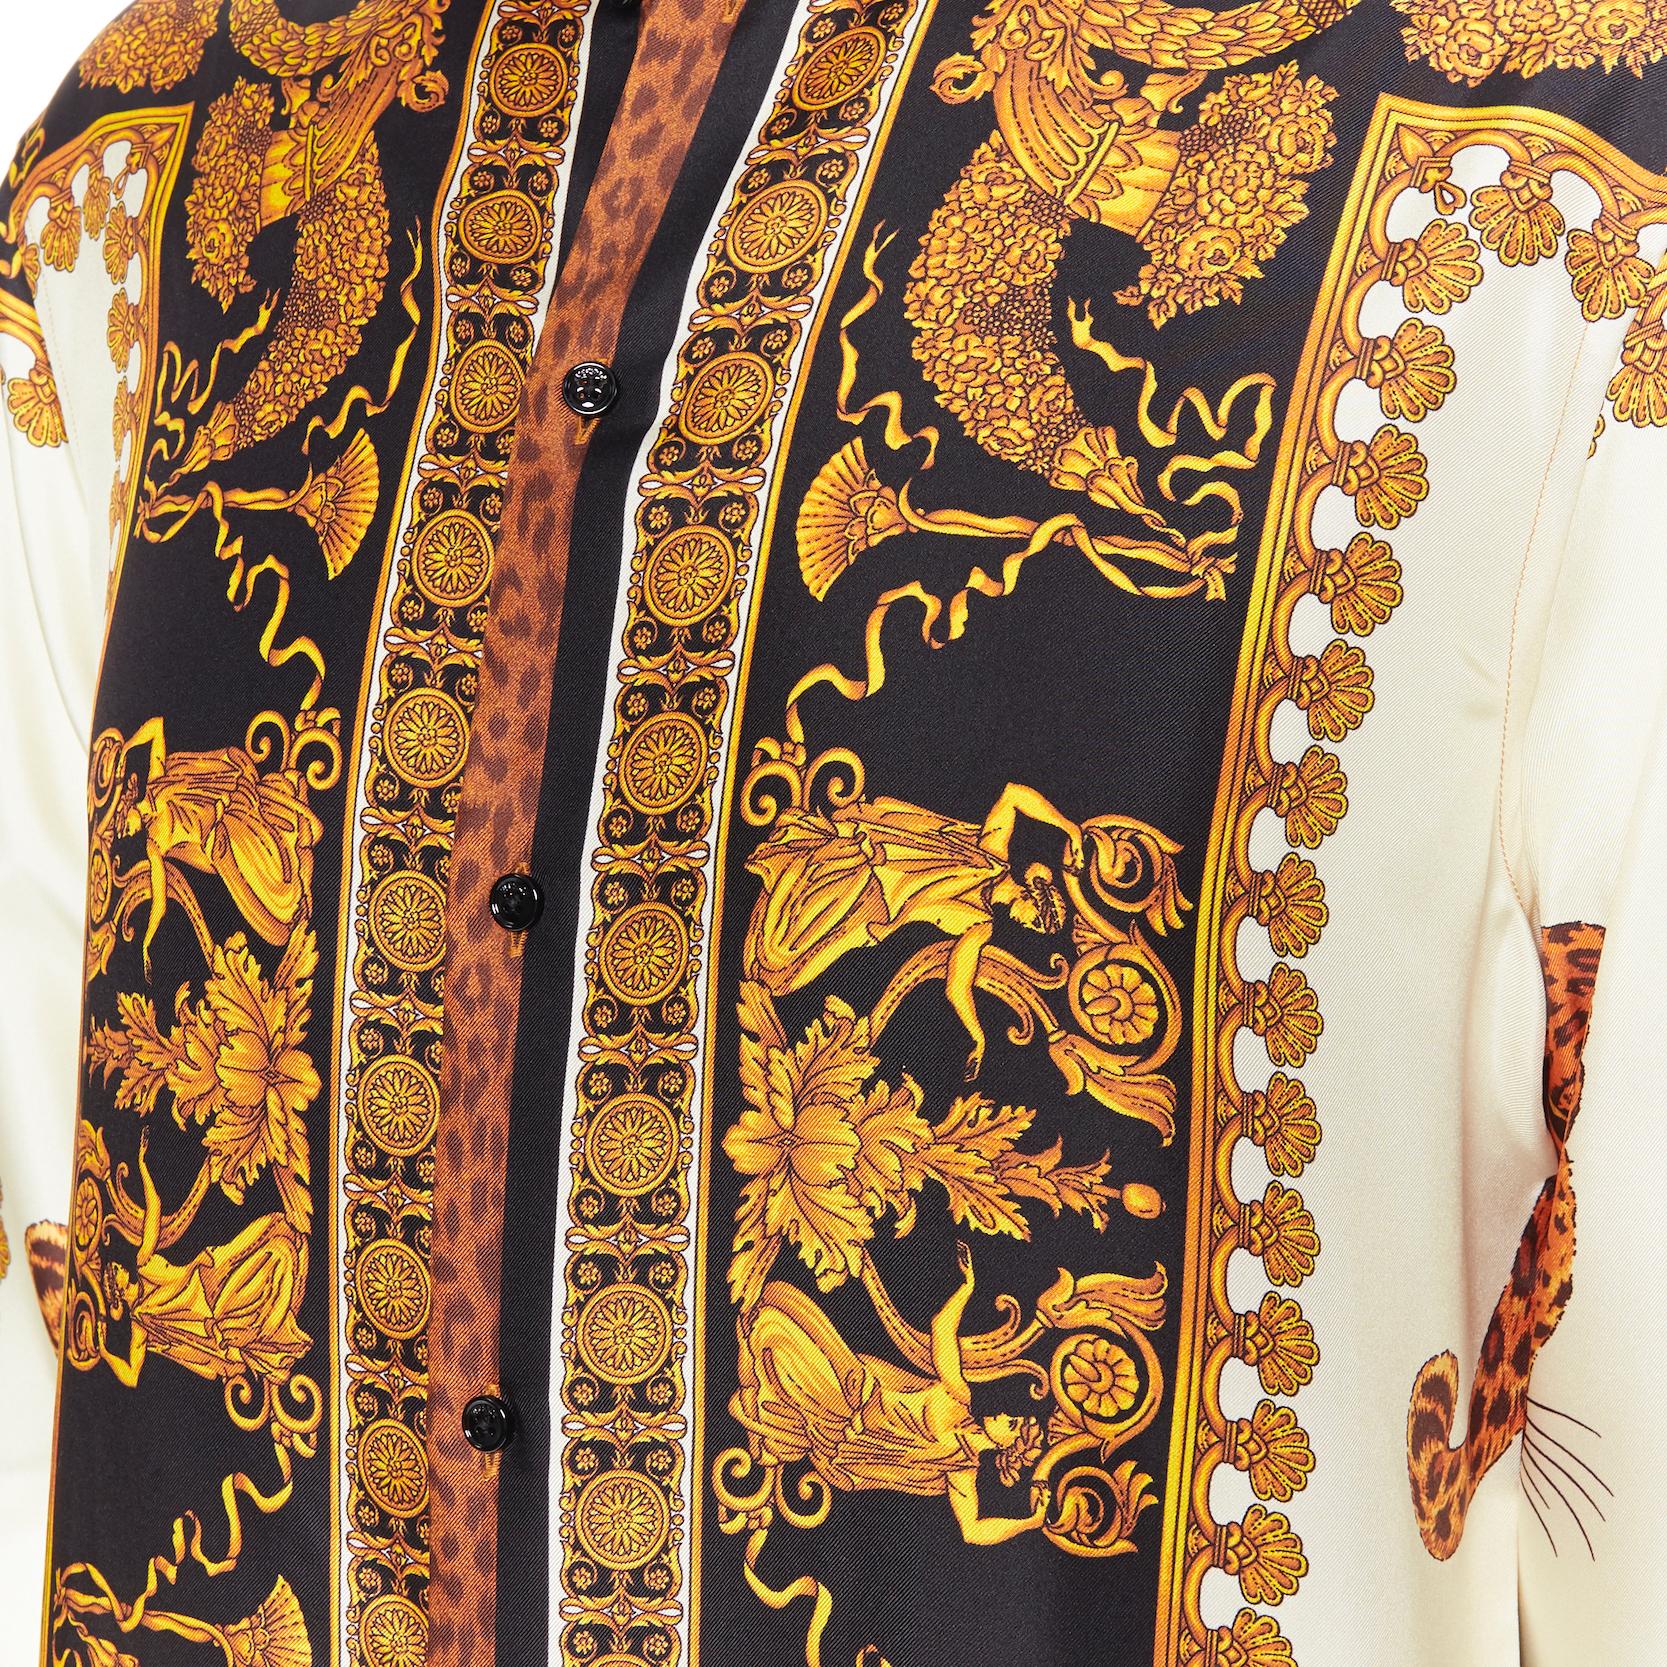 new VERSACE AW18 Runway Wild Leopard gold baroque print 100% silk shirt EU38 S 6